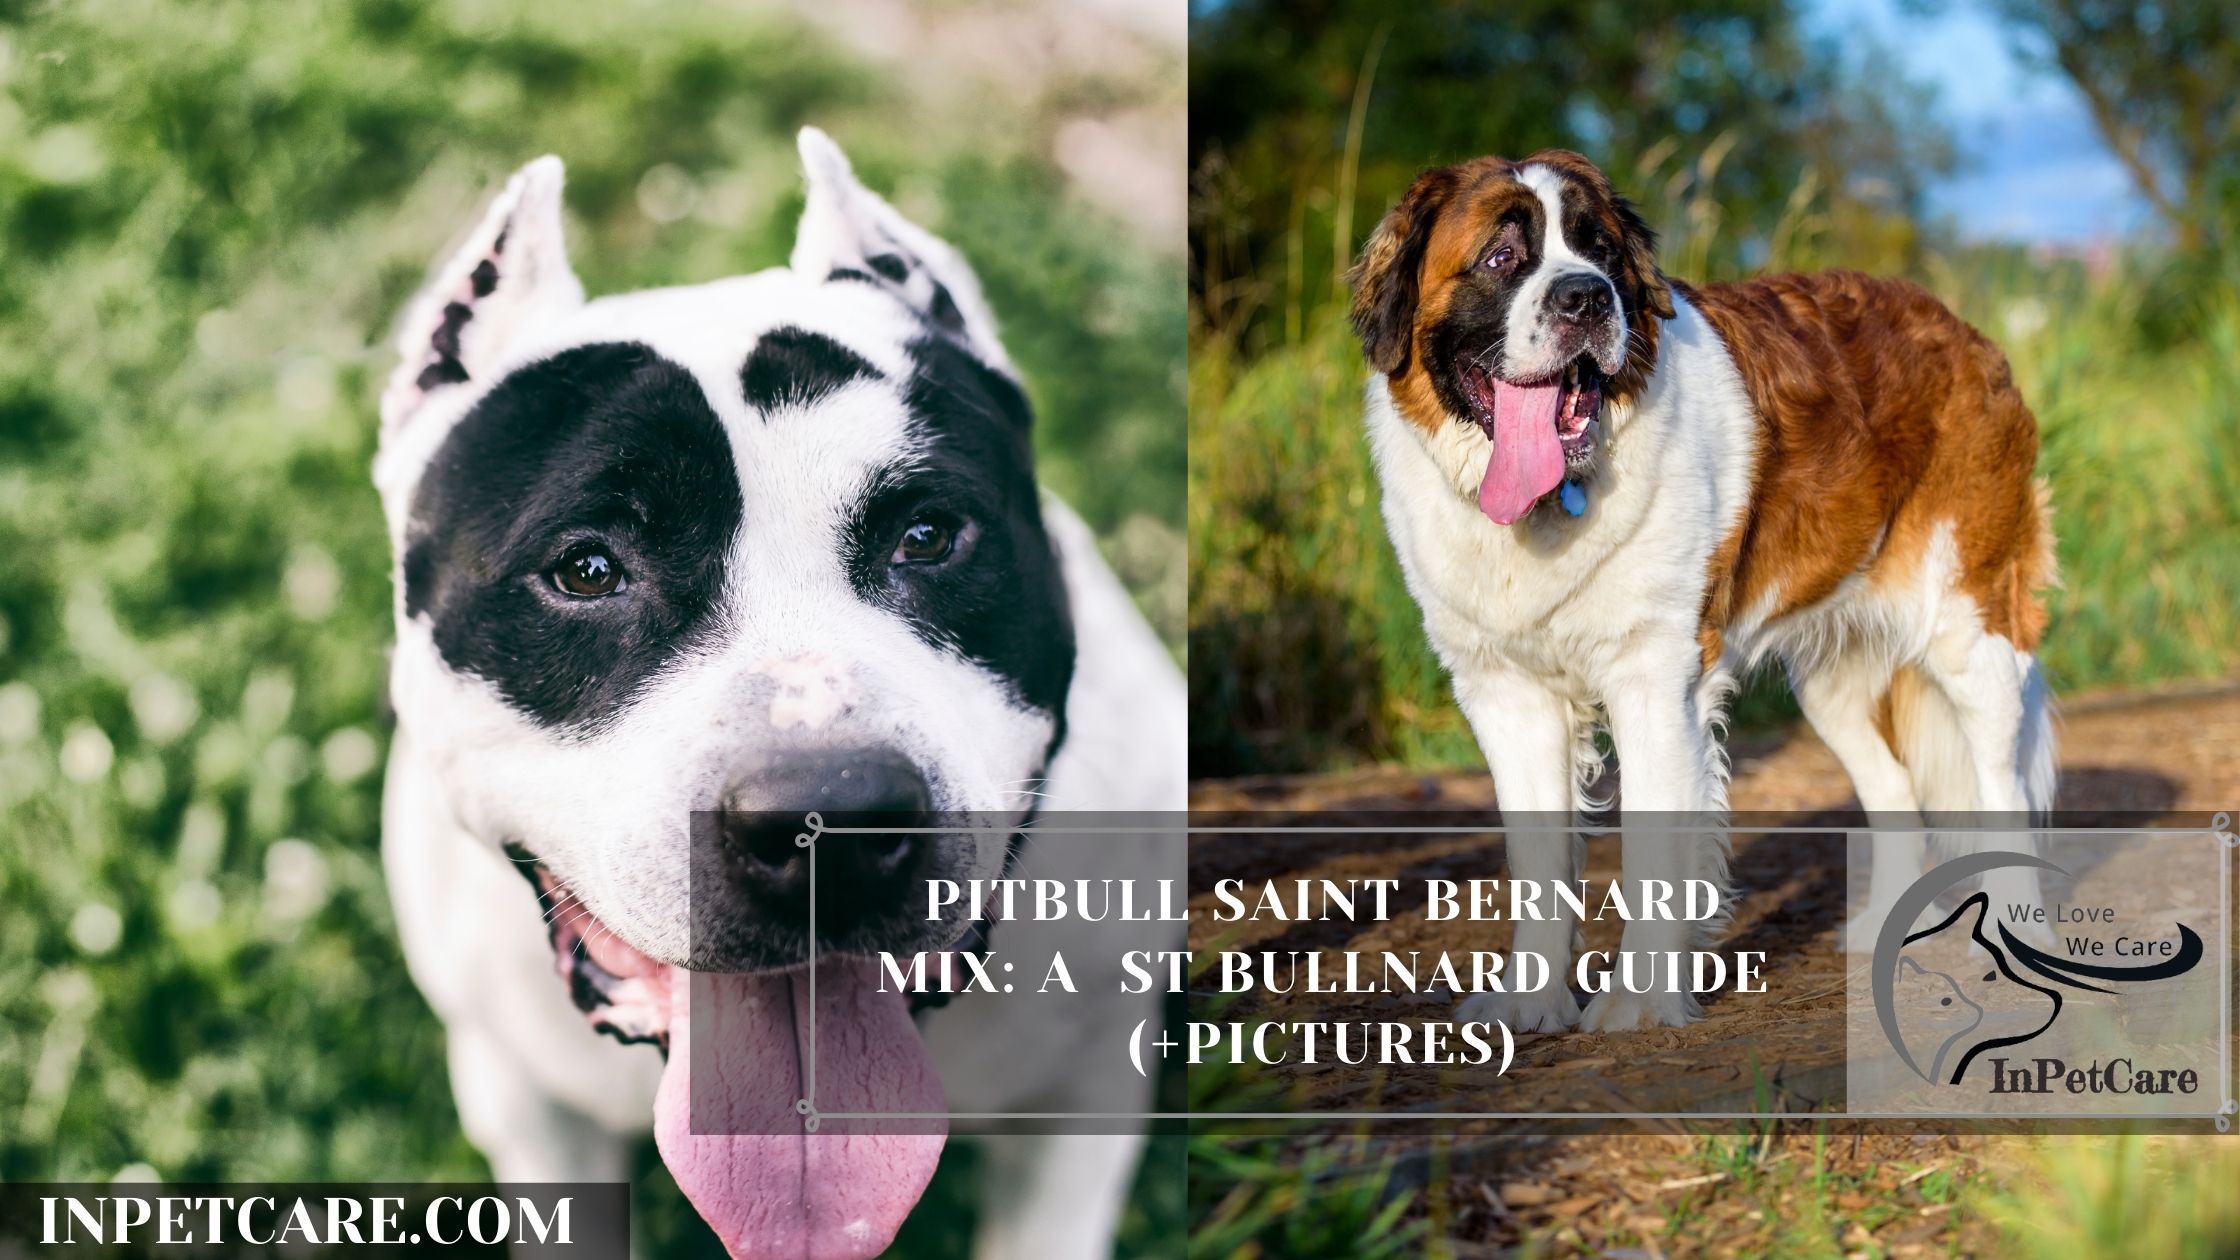 Pitbull Saint Bernard Mix: A St Bullnard Guide (+Pictures)